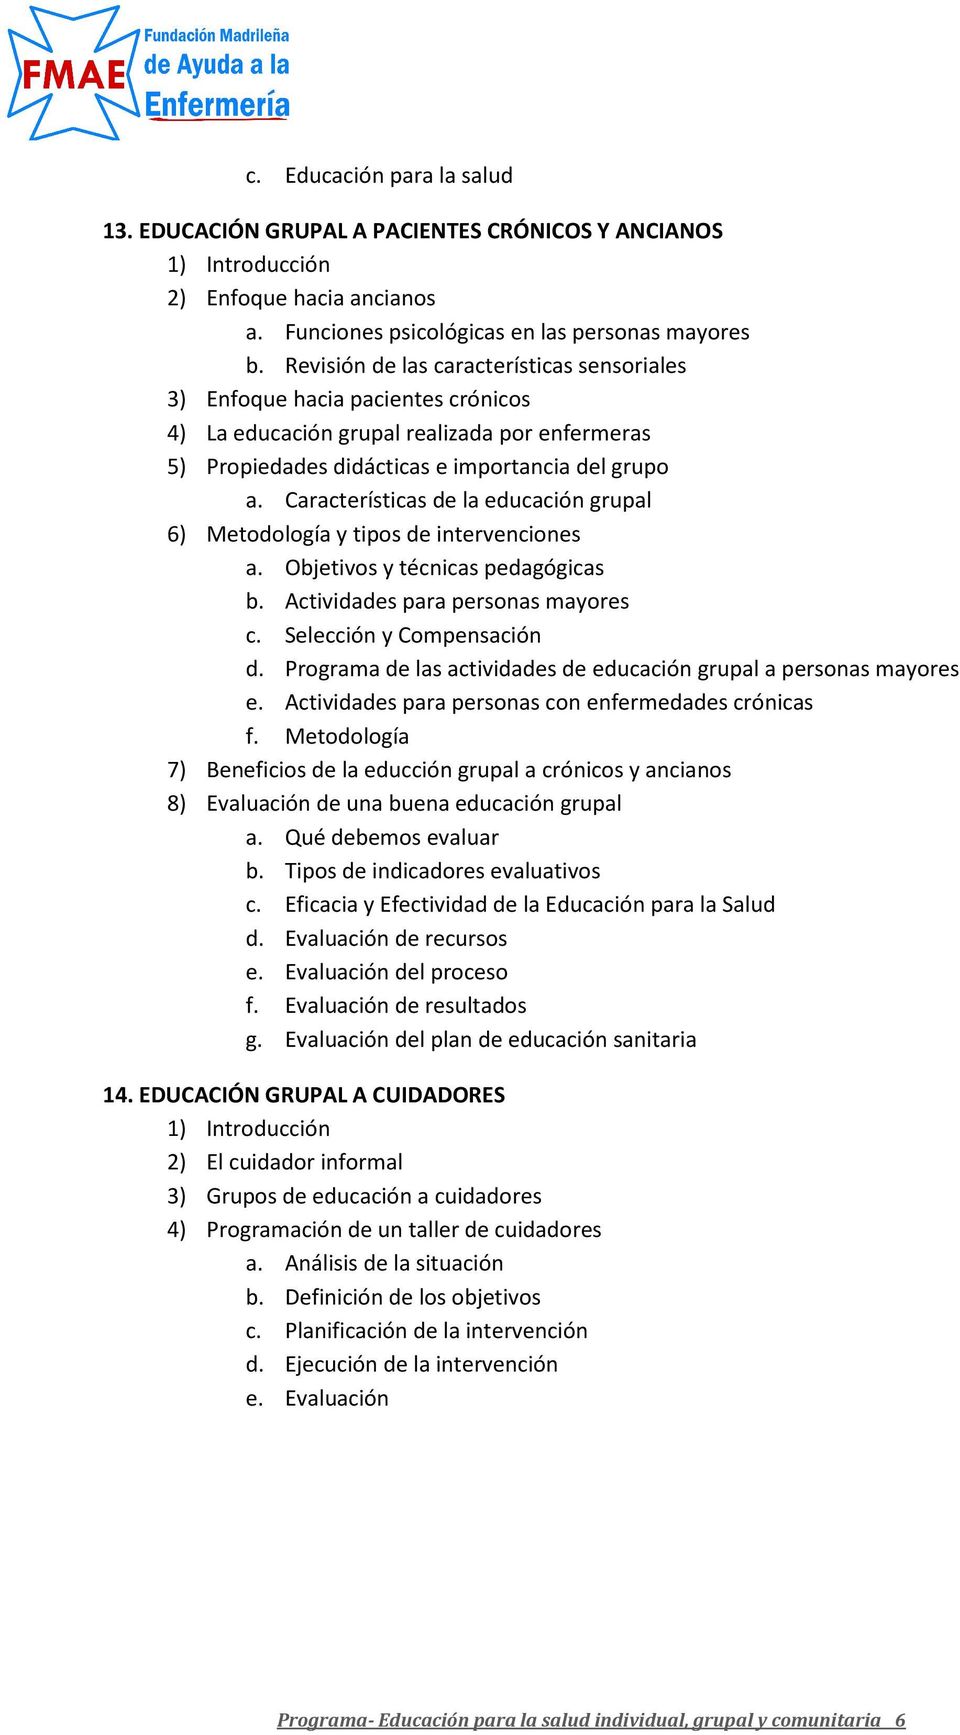 Características de la educación grupal 6) Metodología y tipos de intervenciones a. Objetivos y técnicas pedagógicas b. Actividades para personas mayores c. Selección y Compensación d.